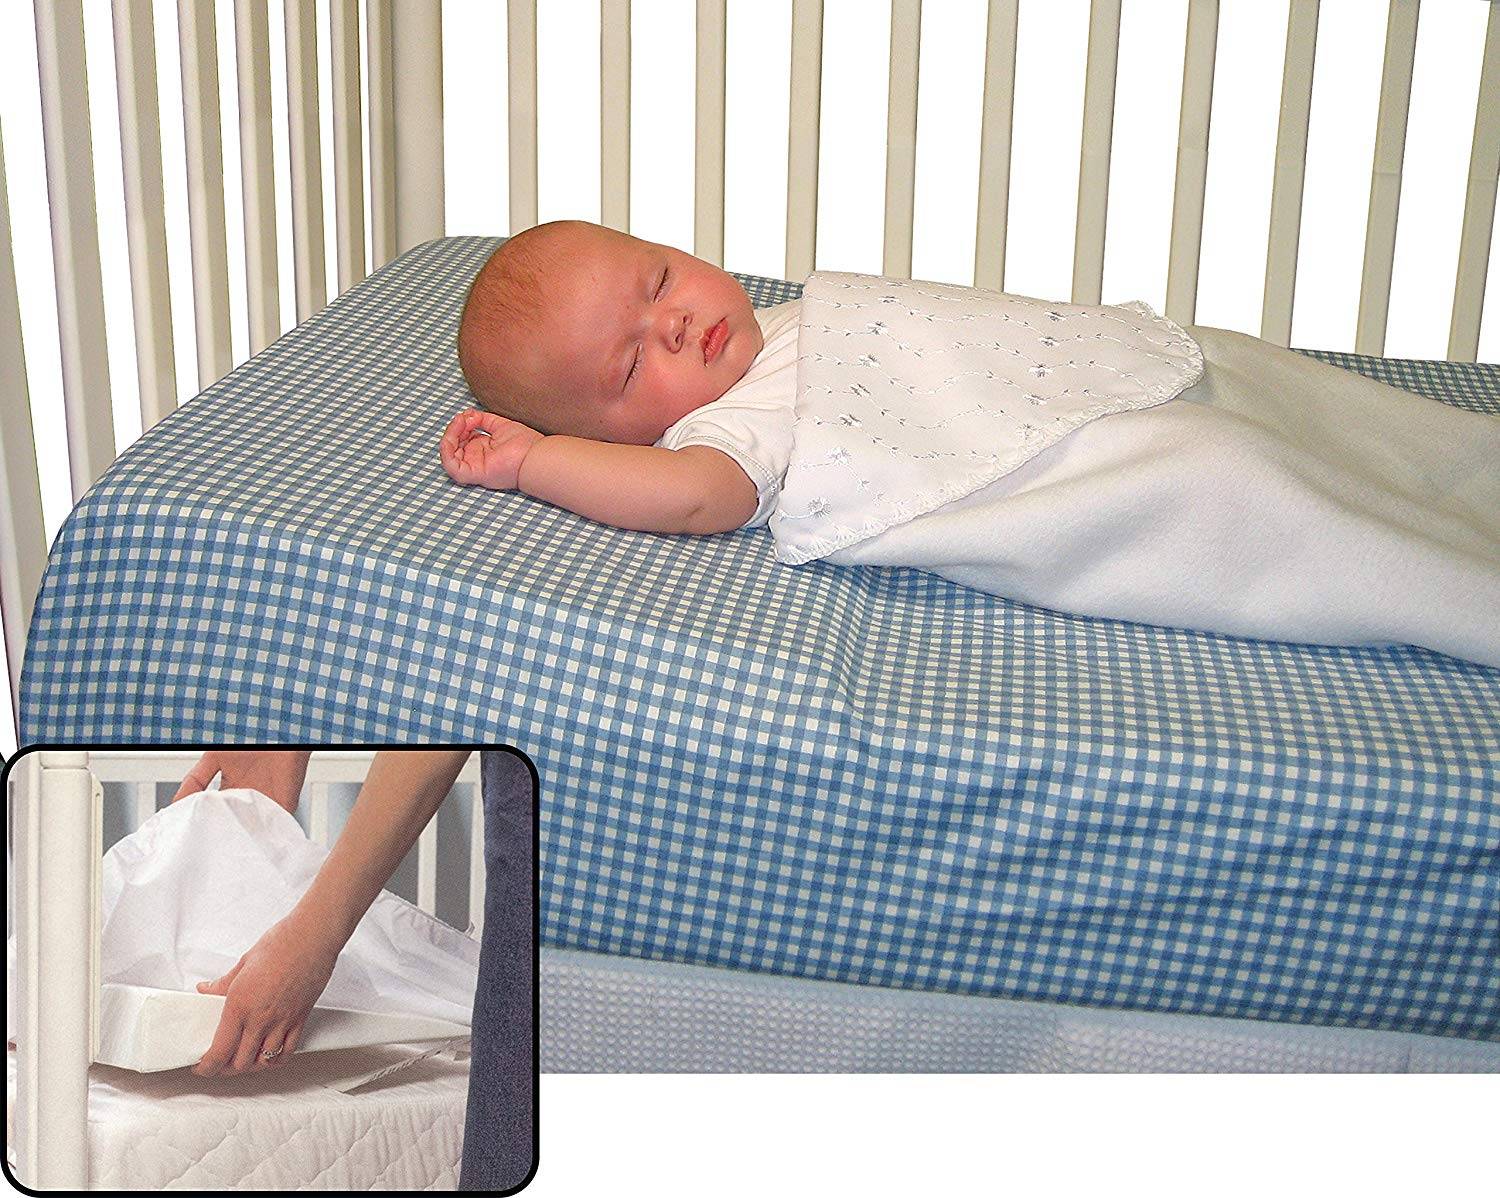 Нужна ли новорожденному подушка, и когда ребенку можно спать на подушке